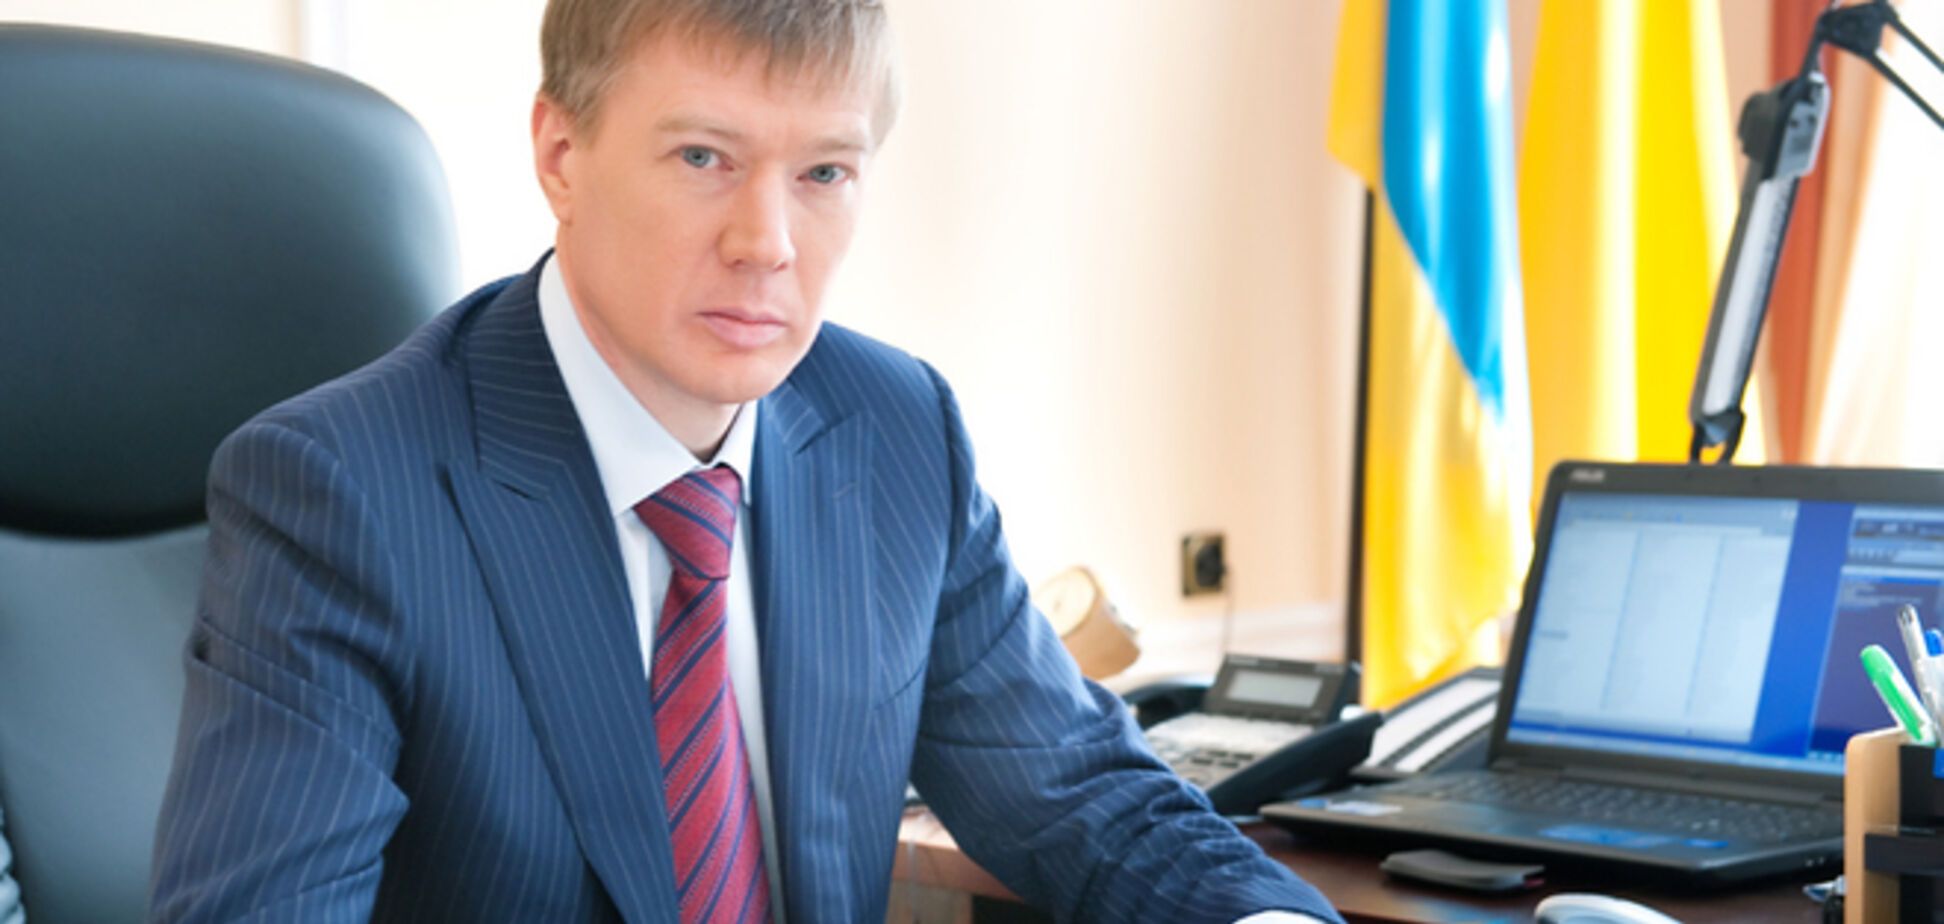 Вместо анонсированных реформ правительство предложило украинцам лишь повышение тарифов - Ларин